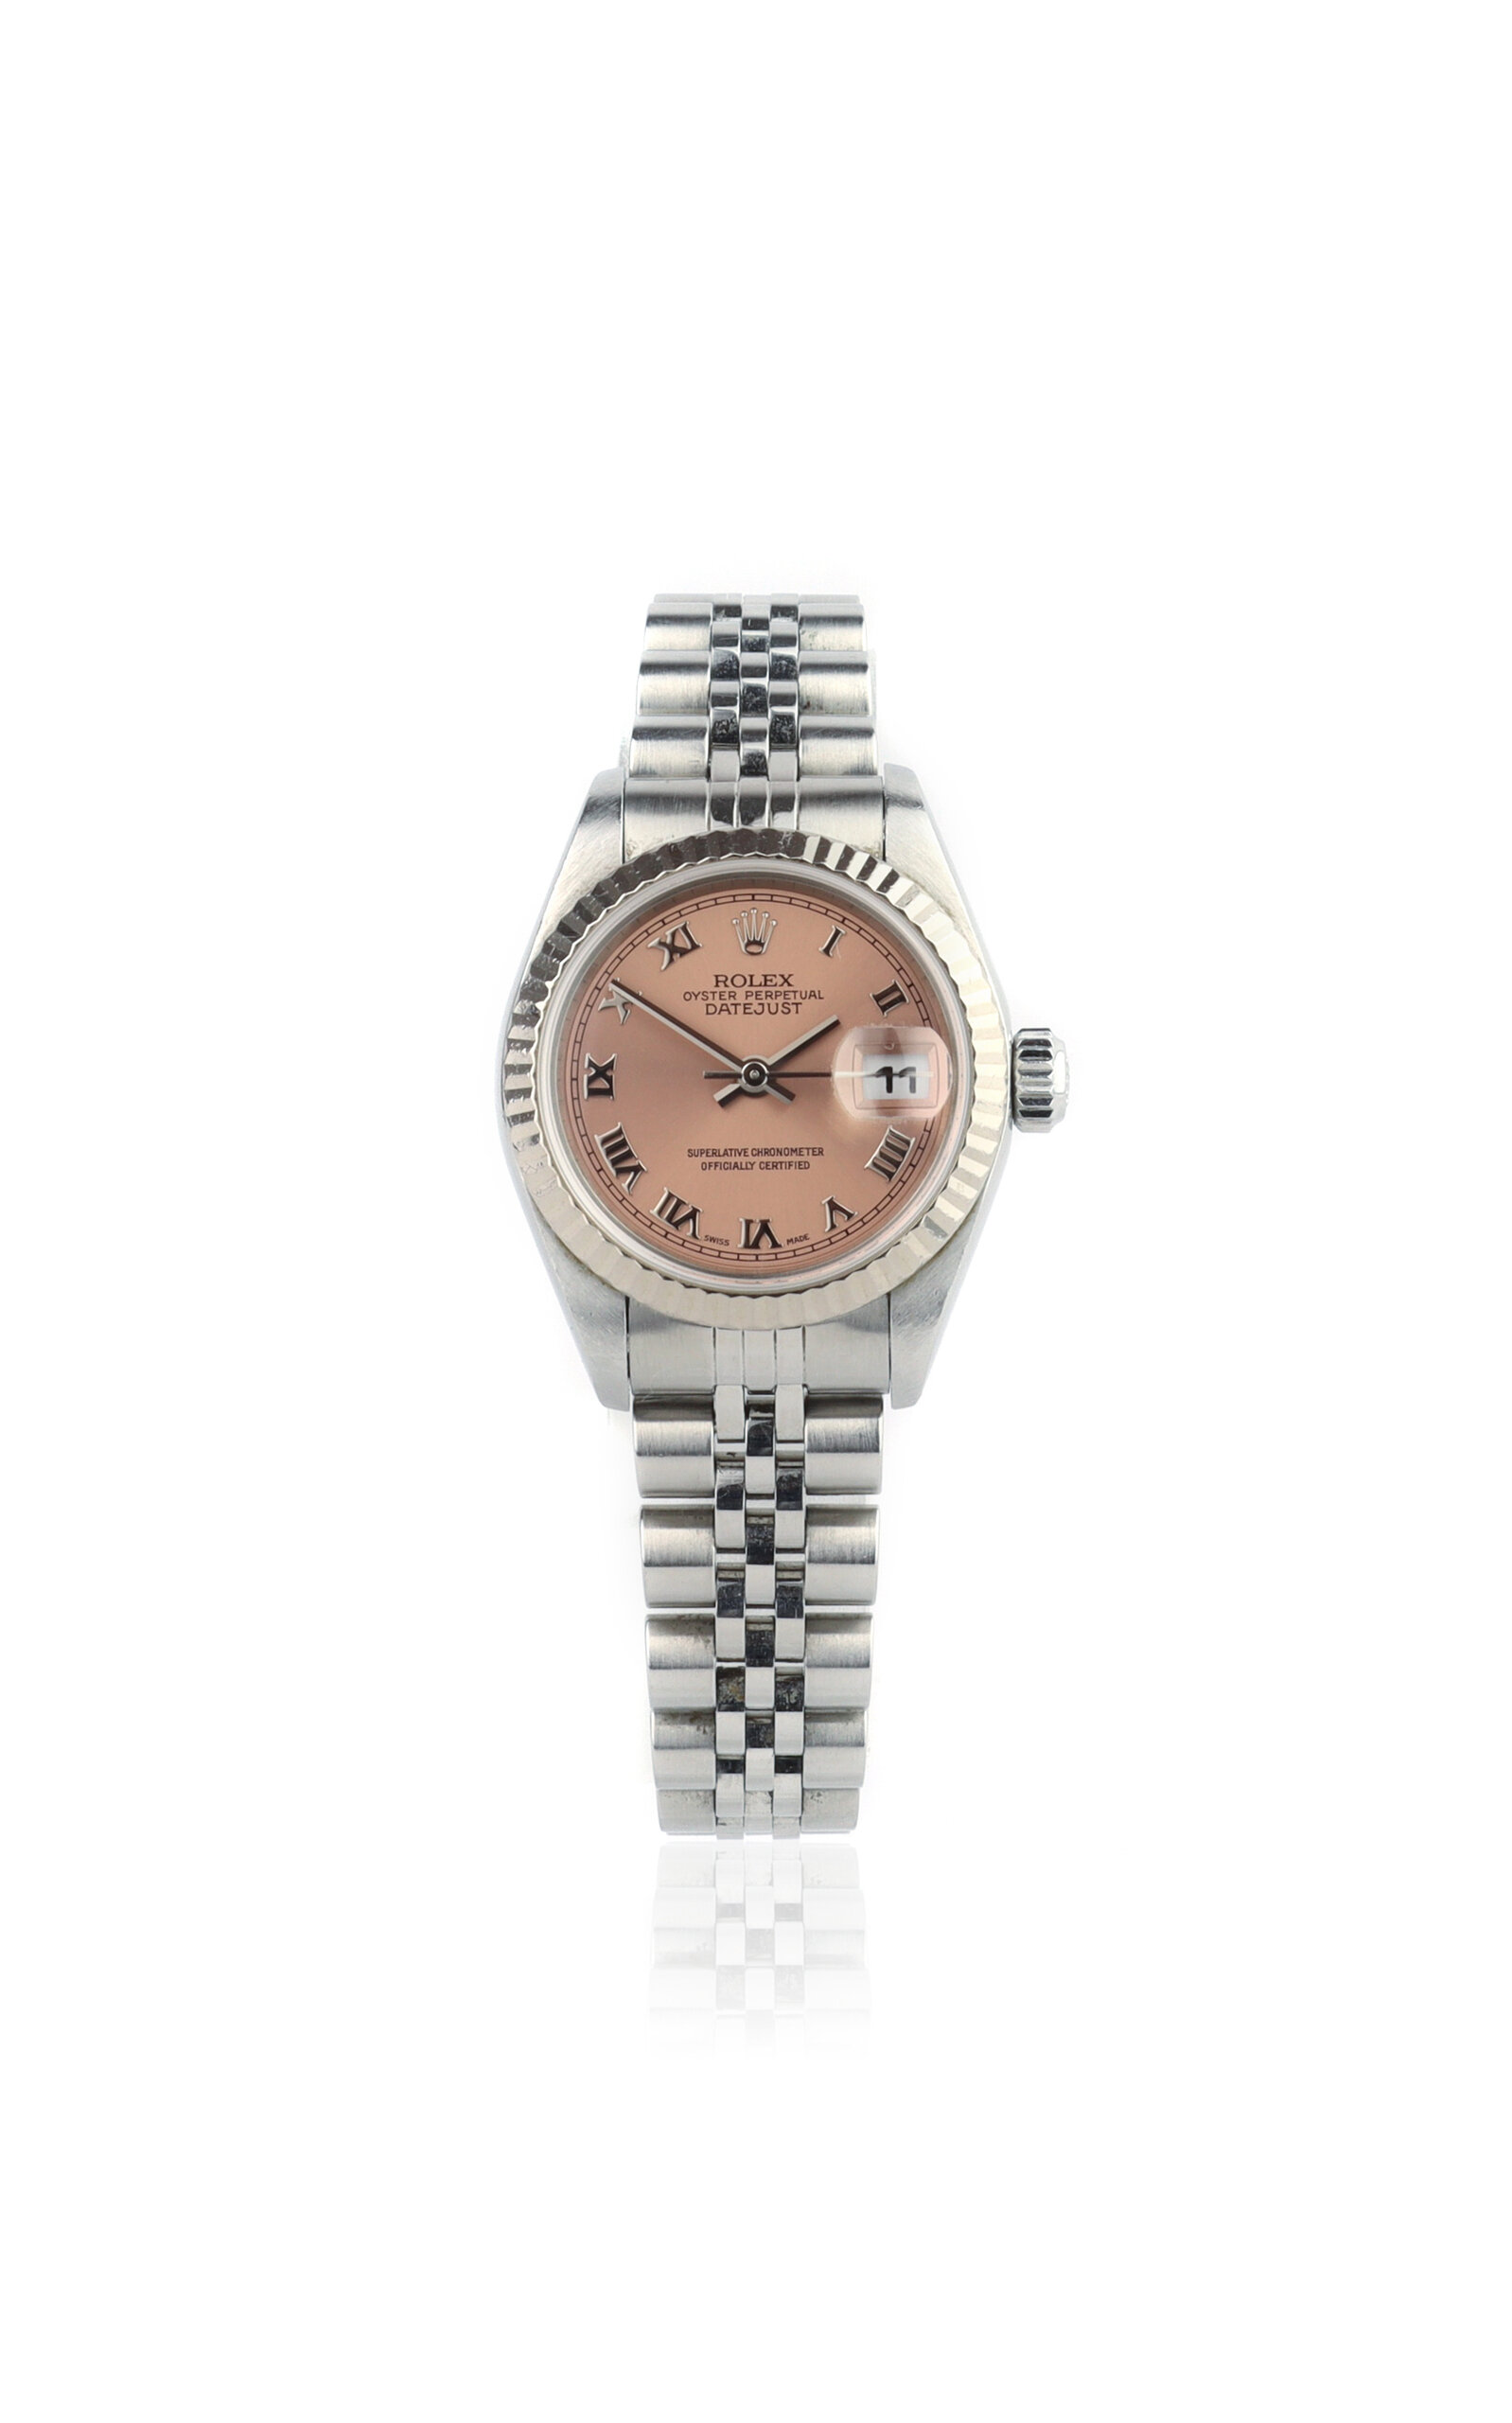 Vintage Rolex DateJust Stainless Steel Watch